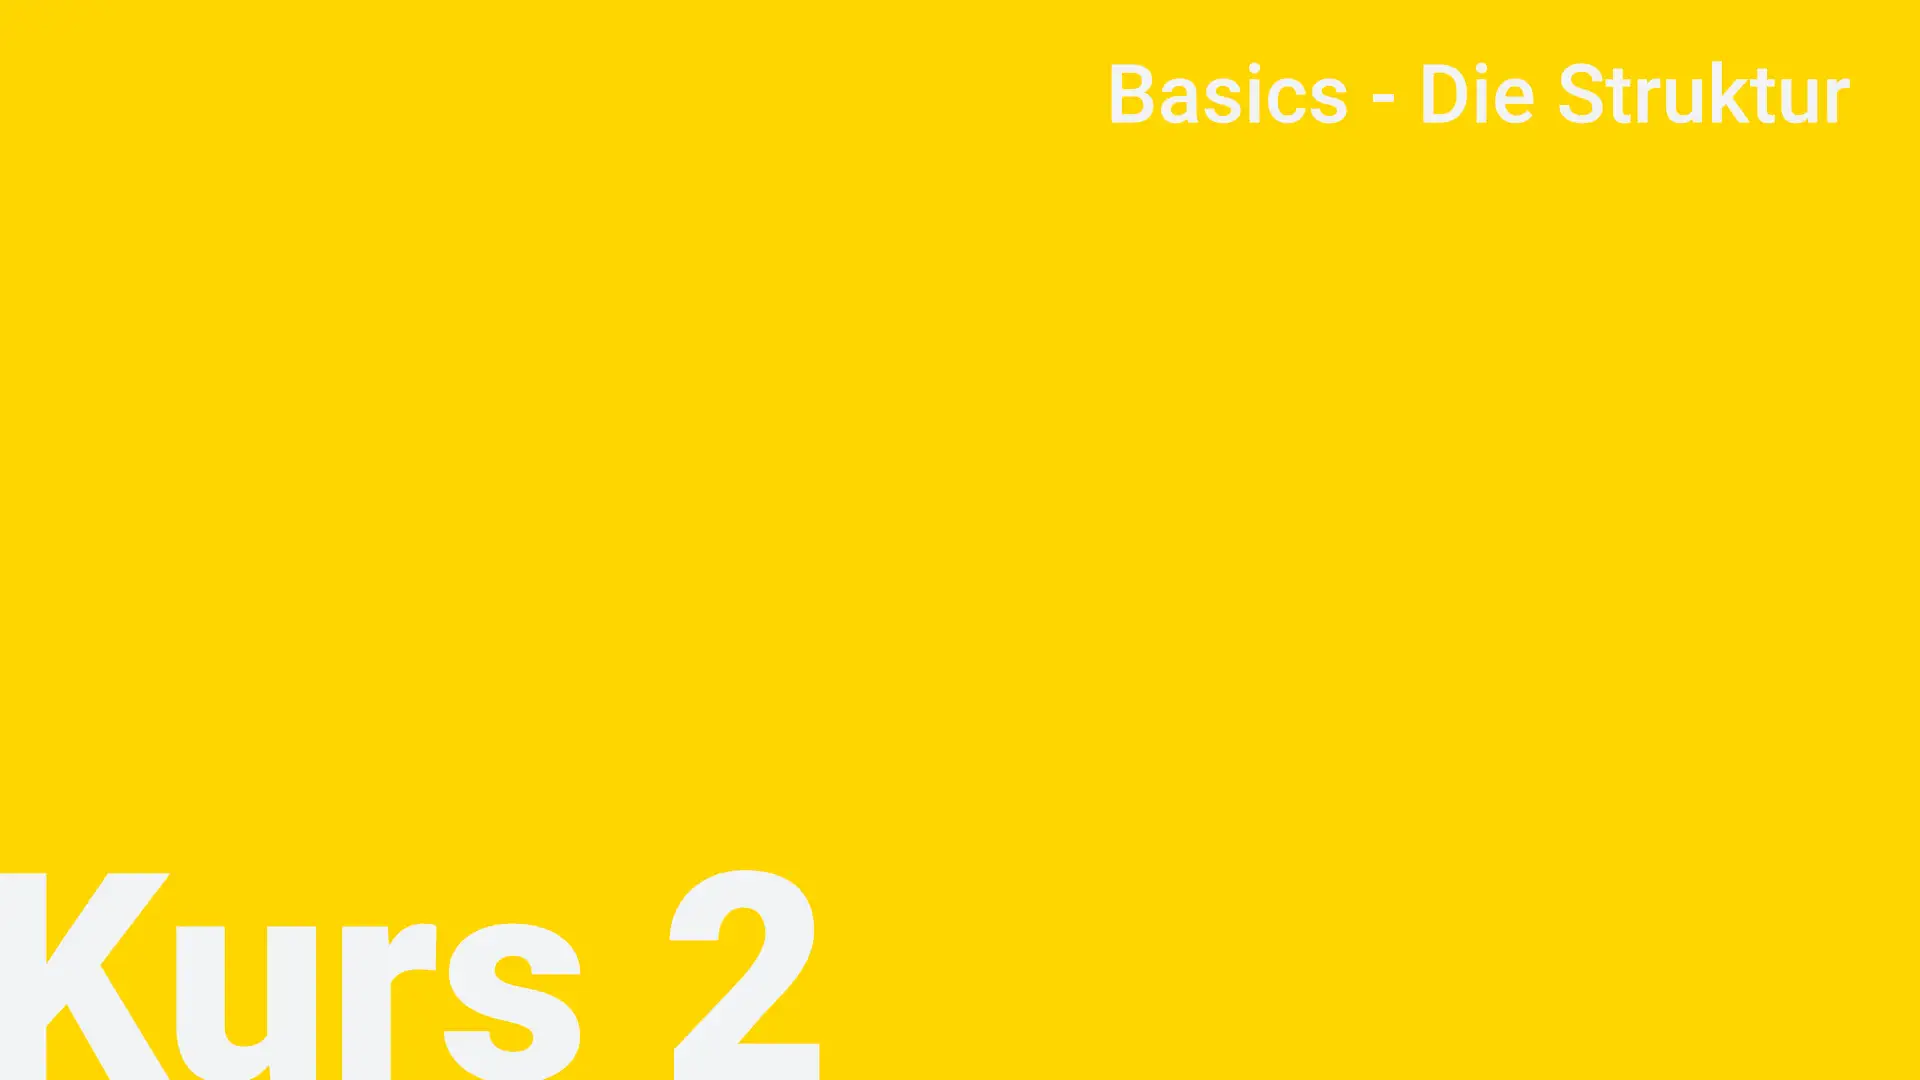 2. Basics - Die Struktur